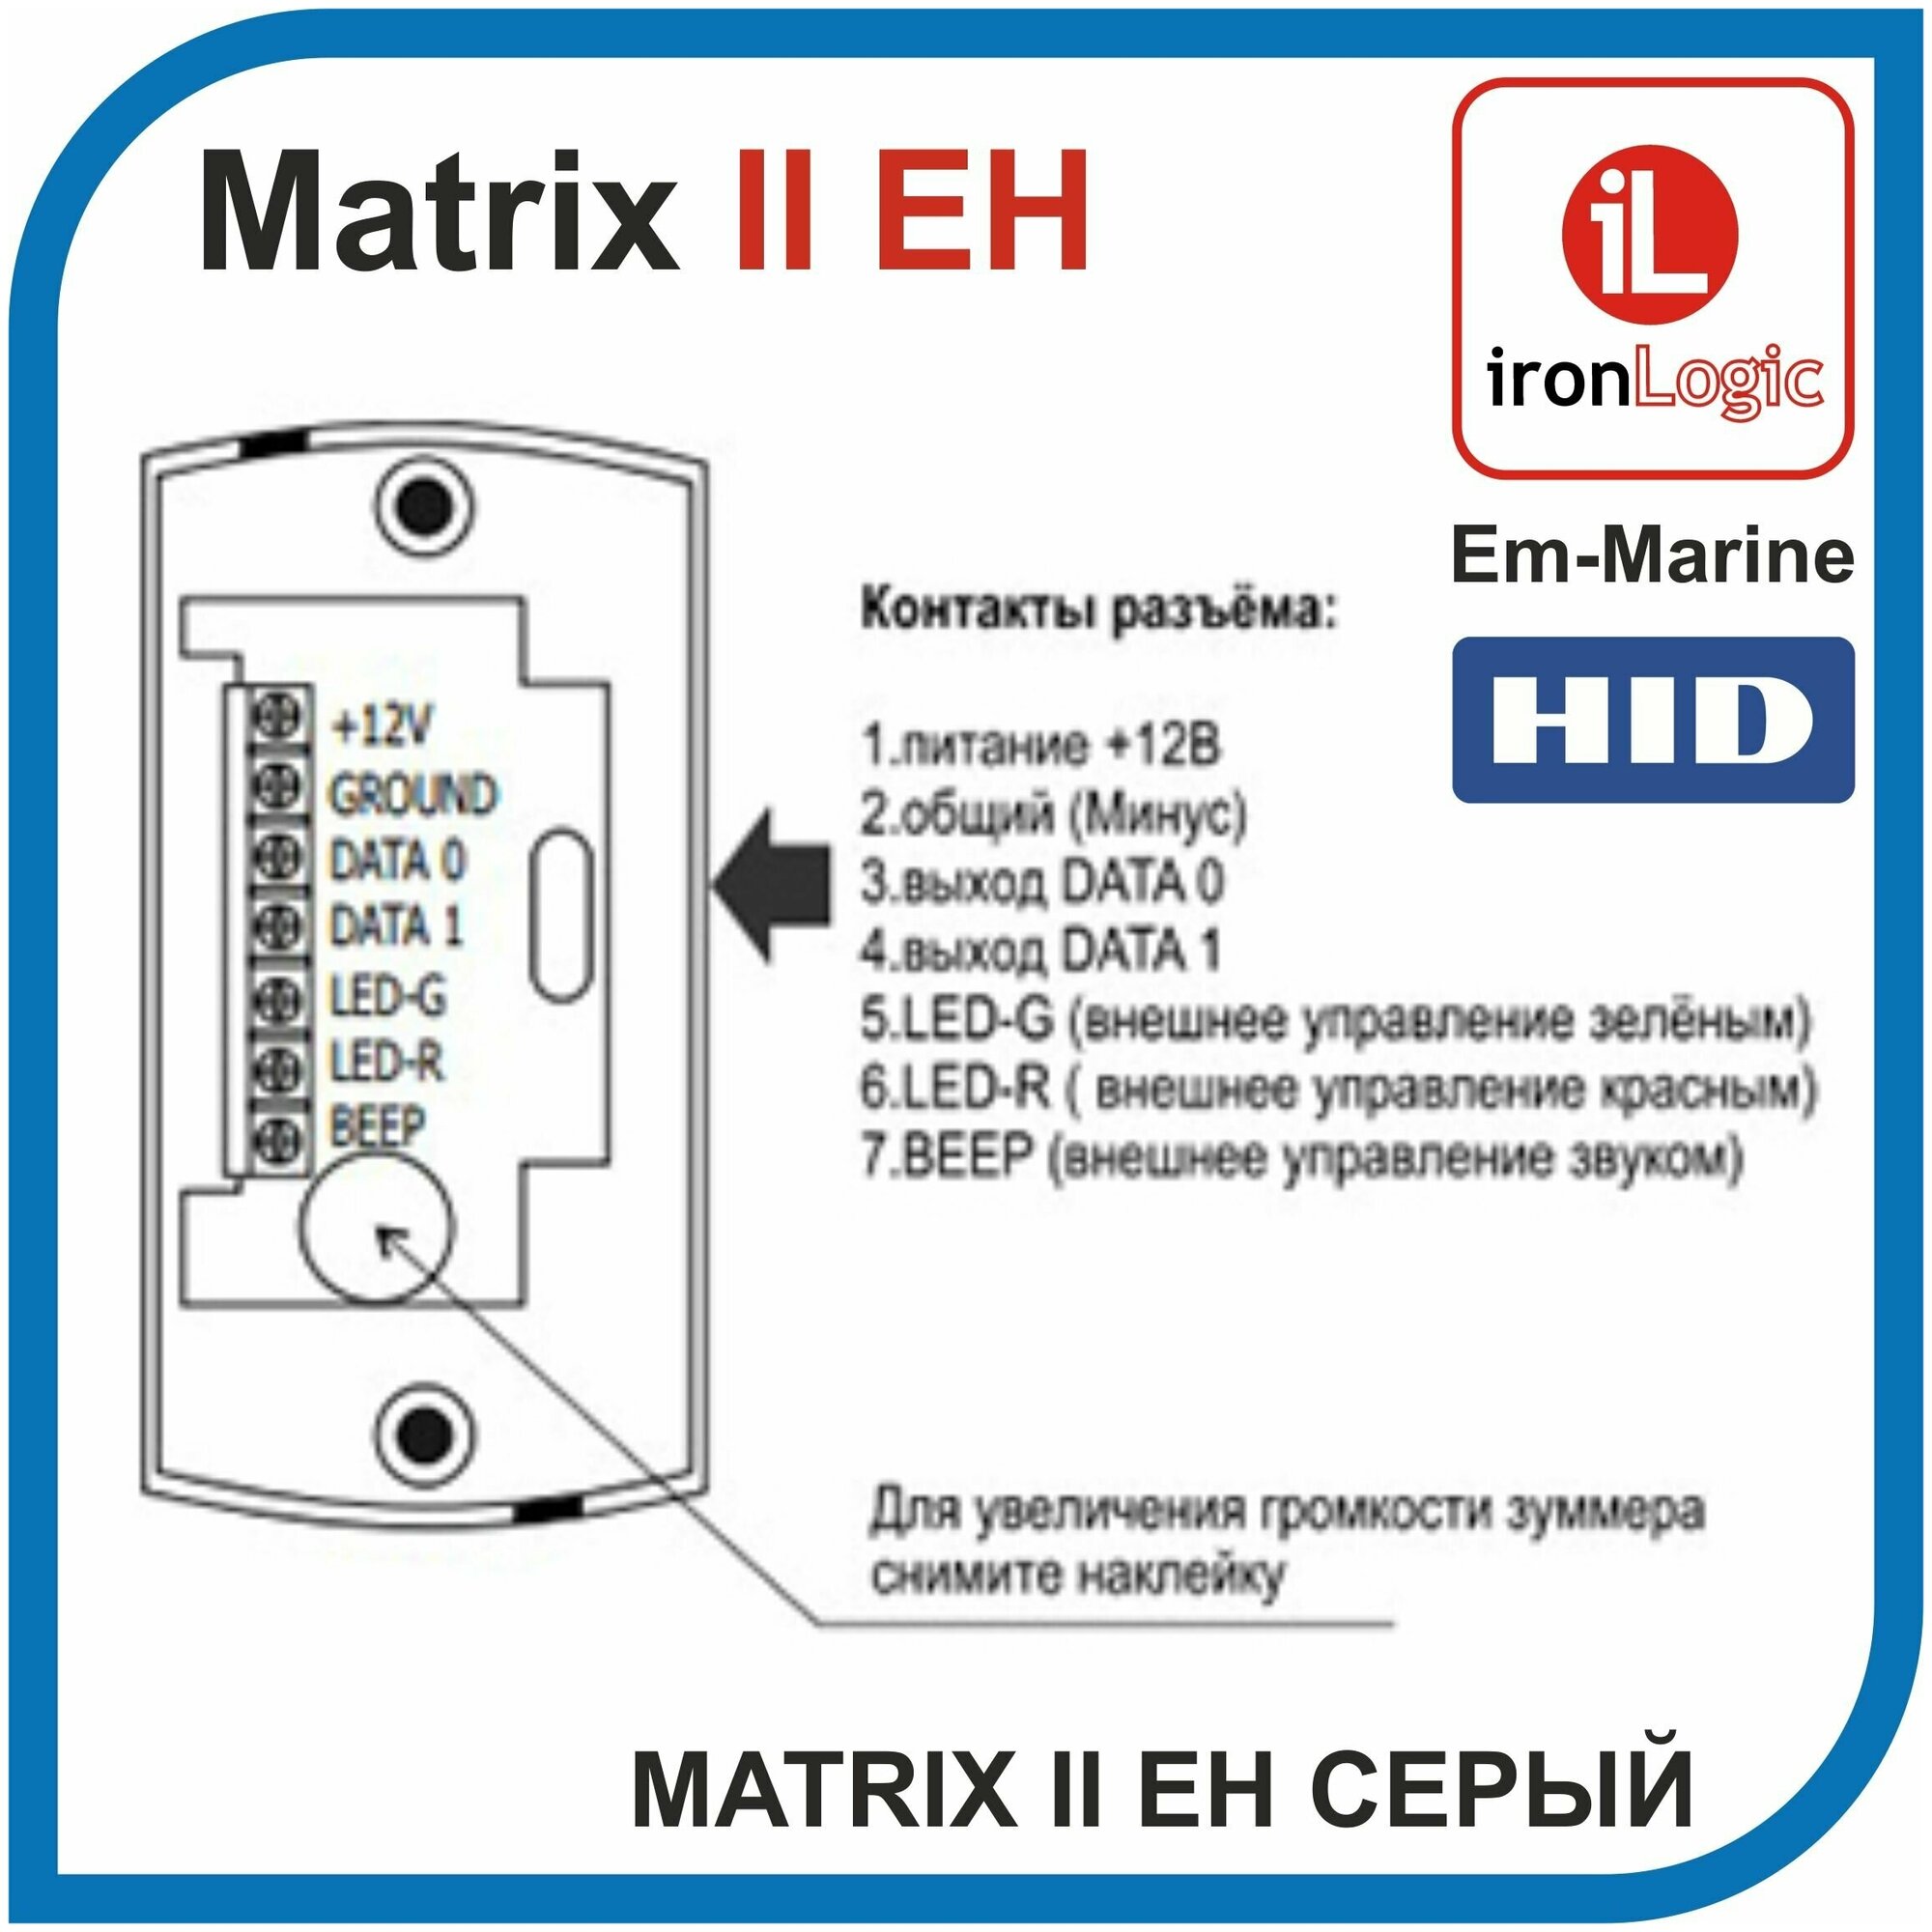 Matrix II EH Считыватель IronLogic бесконтактный для proxi-карт EM-marine и HiD Цвет: Серый